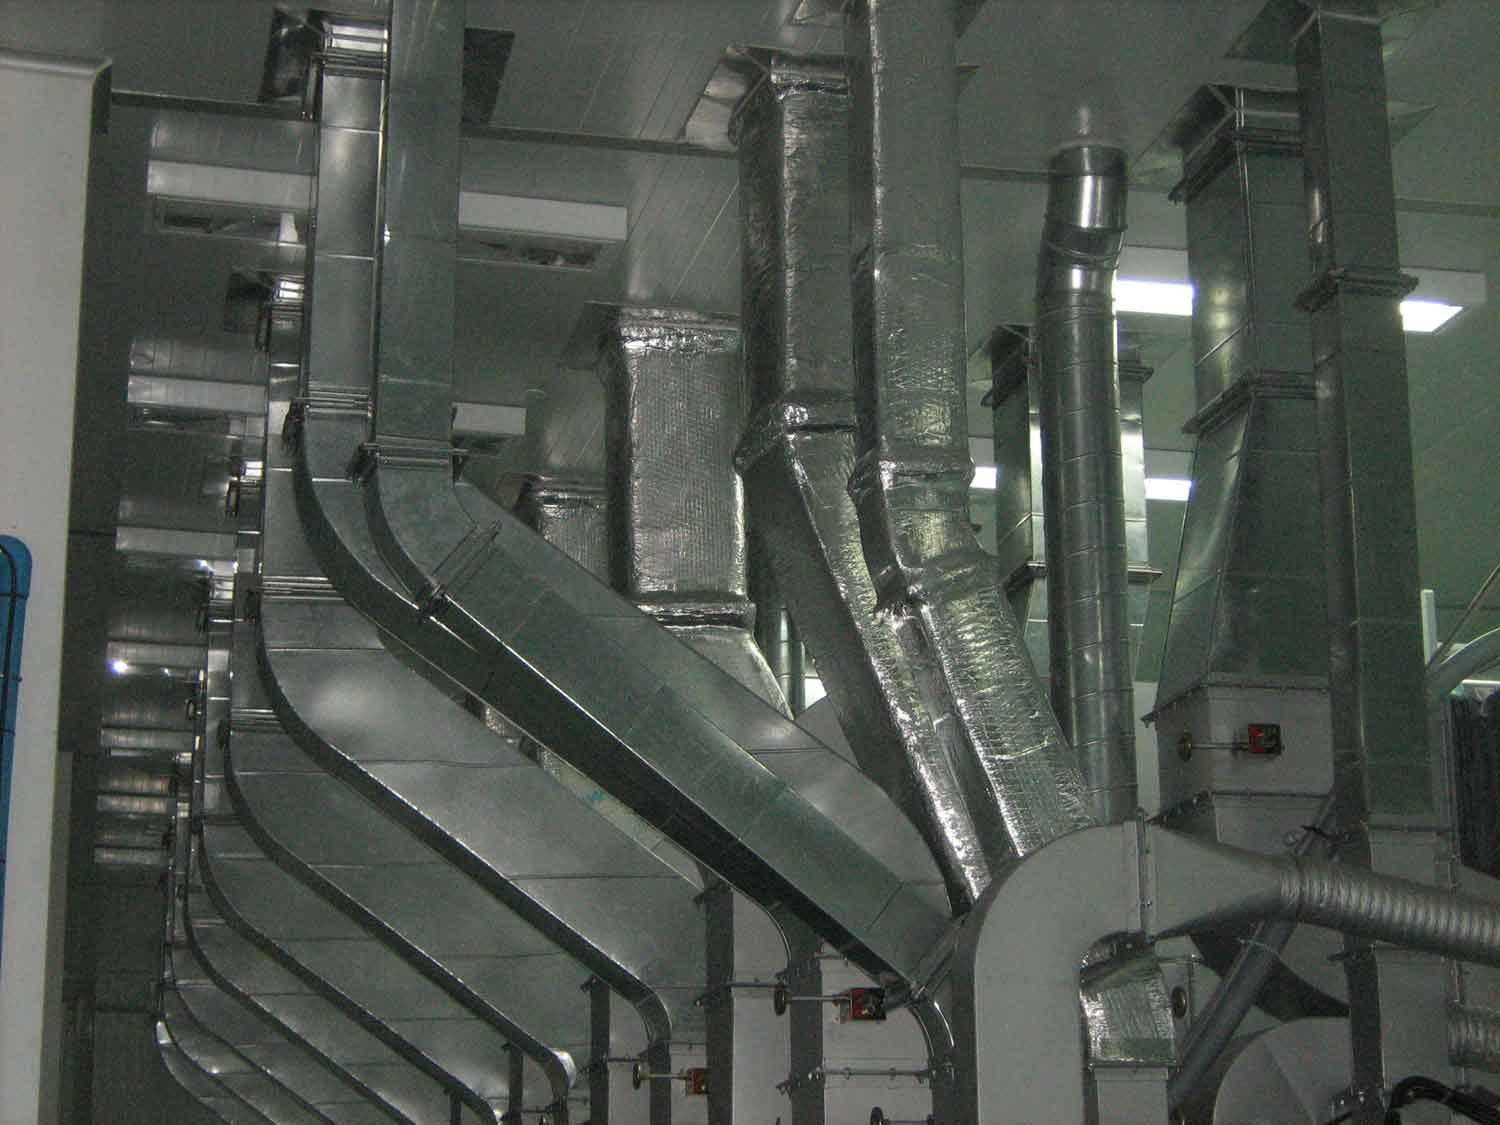 ท่อดักท์ Exhaust งานผลิต ติดตั้งท่อระบายอากาศ (Exhaust) ของเครื่องจักรพิมพ์   หน้างาน บริษัท ปทุมเฟล 2